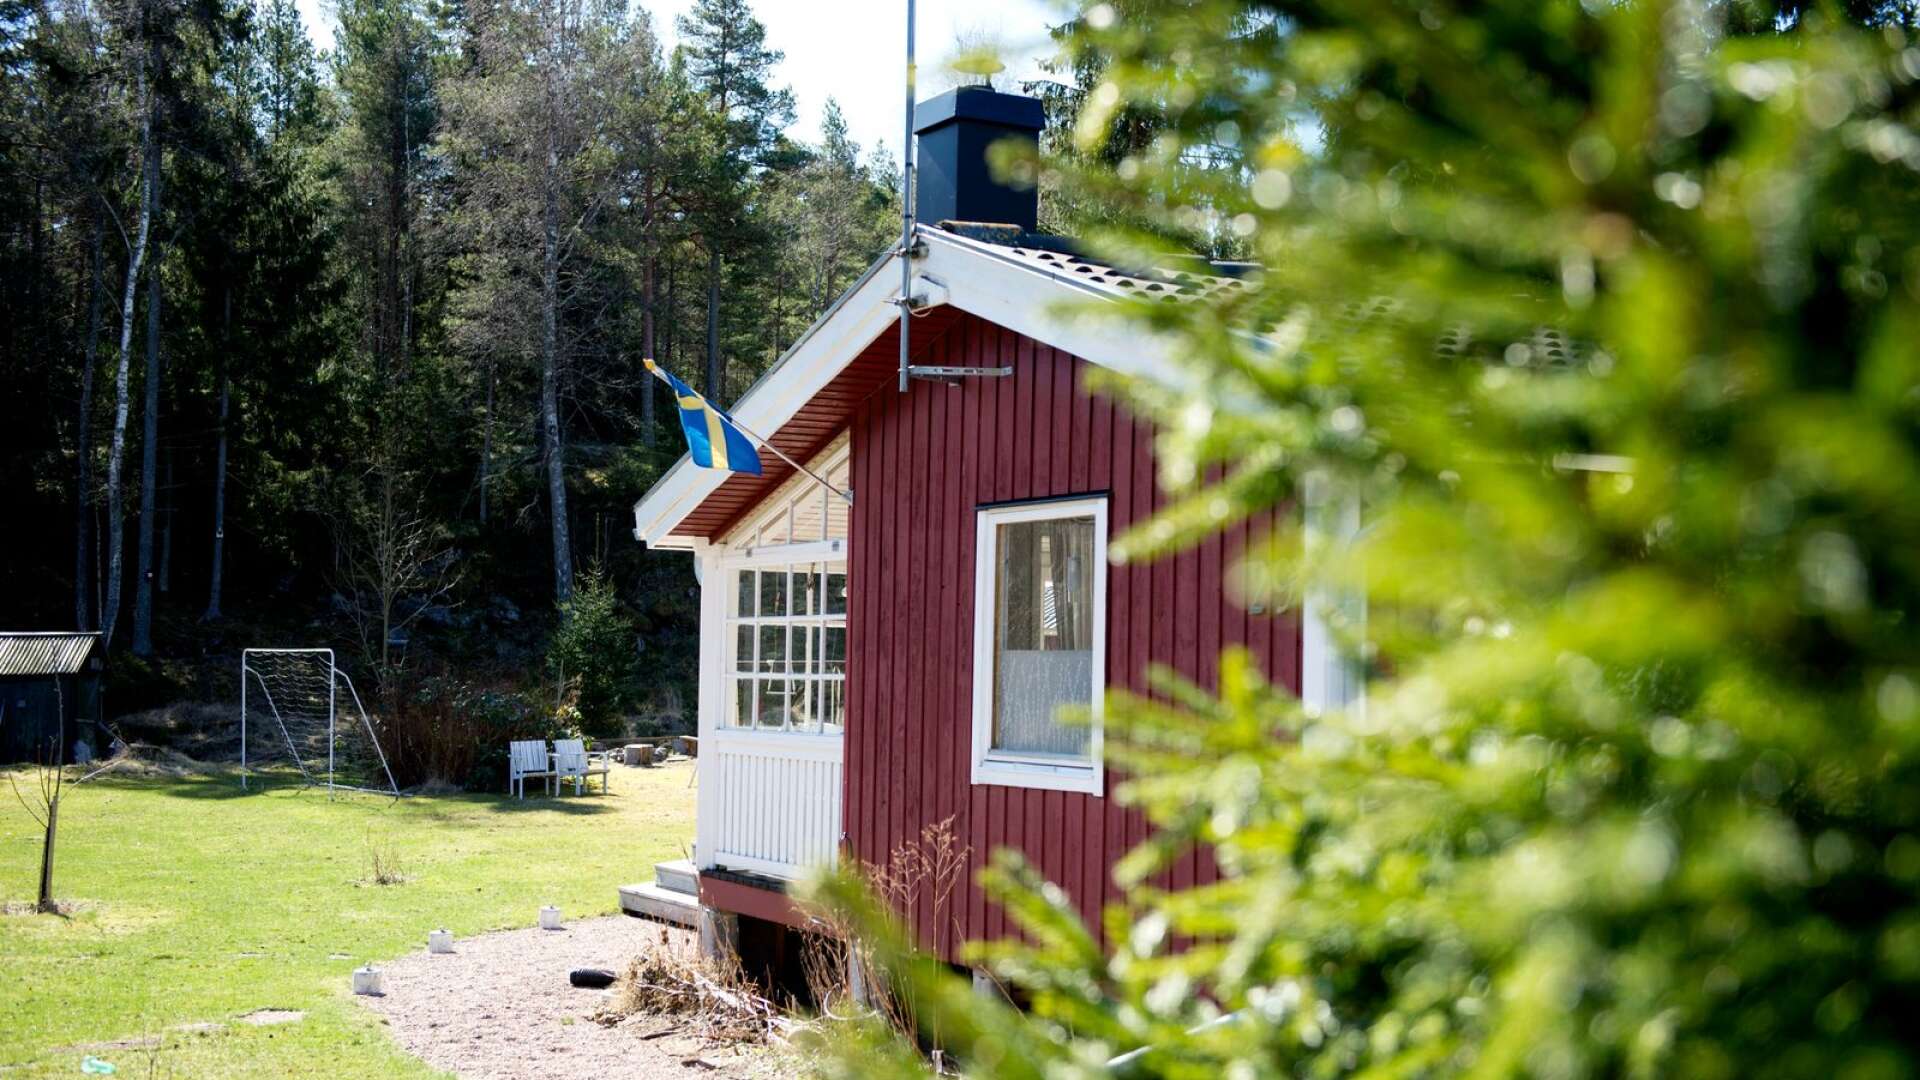 Fritidshuspriserna skjuter i höjden när människor fått chansen att reflektera över vad de saknar: utrymme, frisk luft, grönska och fågelkvitter, skriver Lars Anders Johansson.